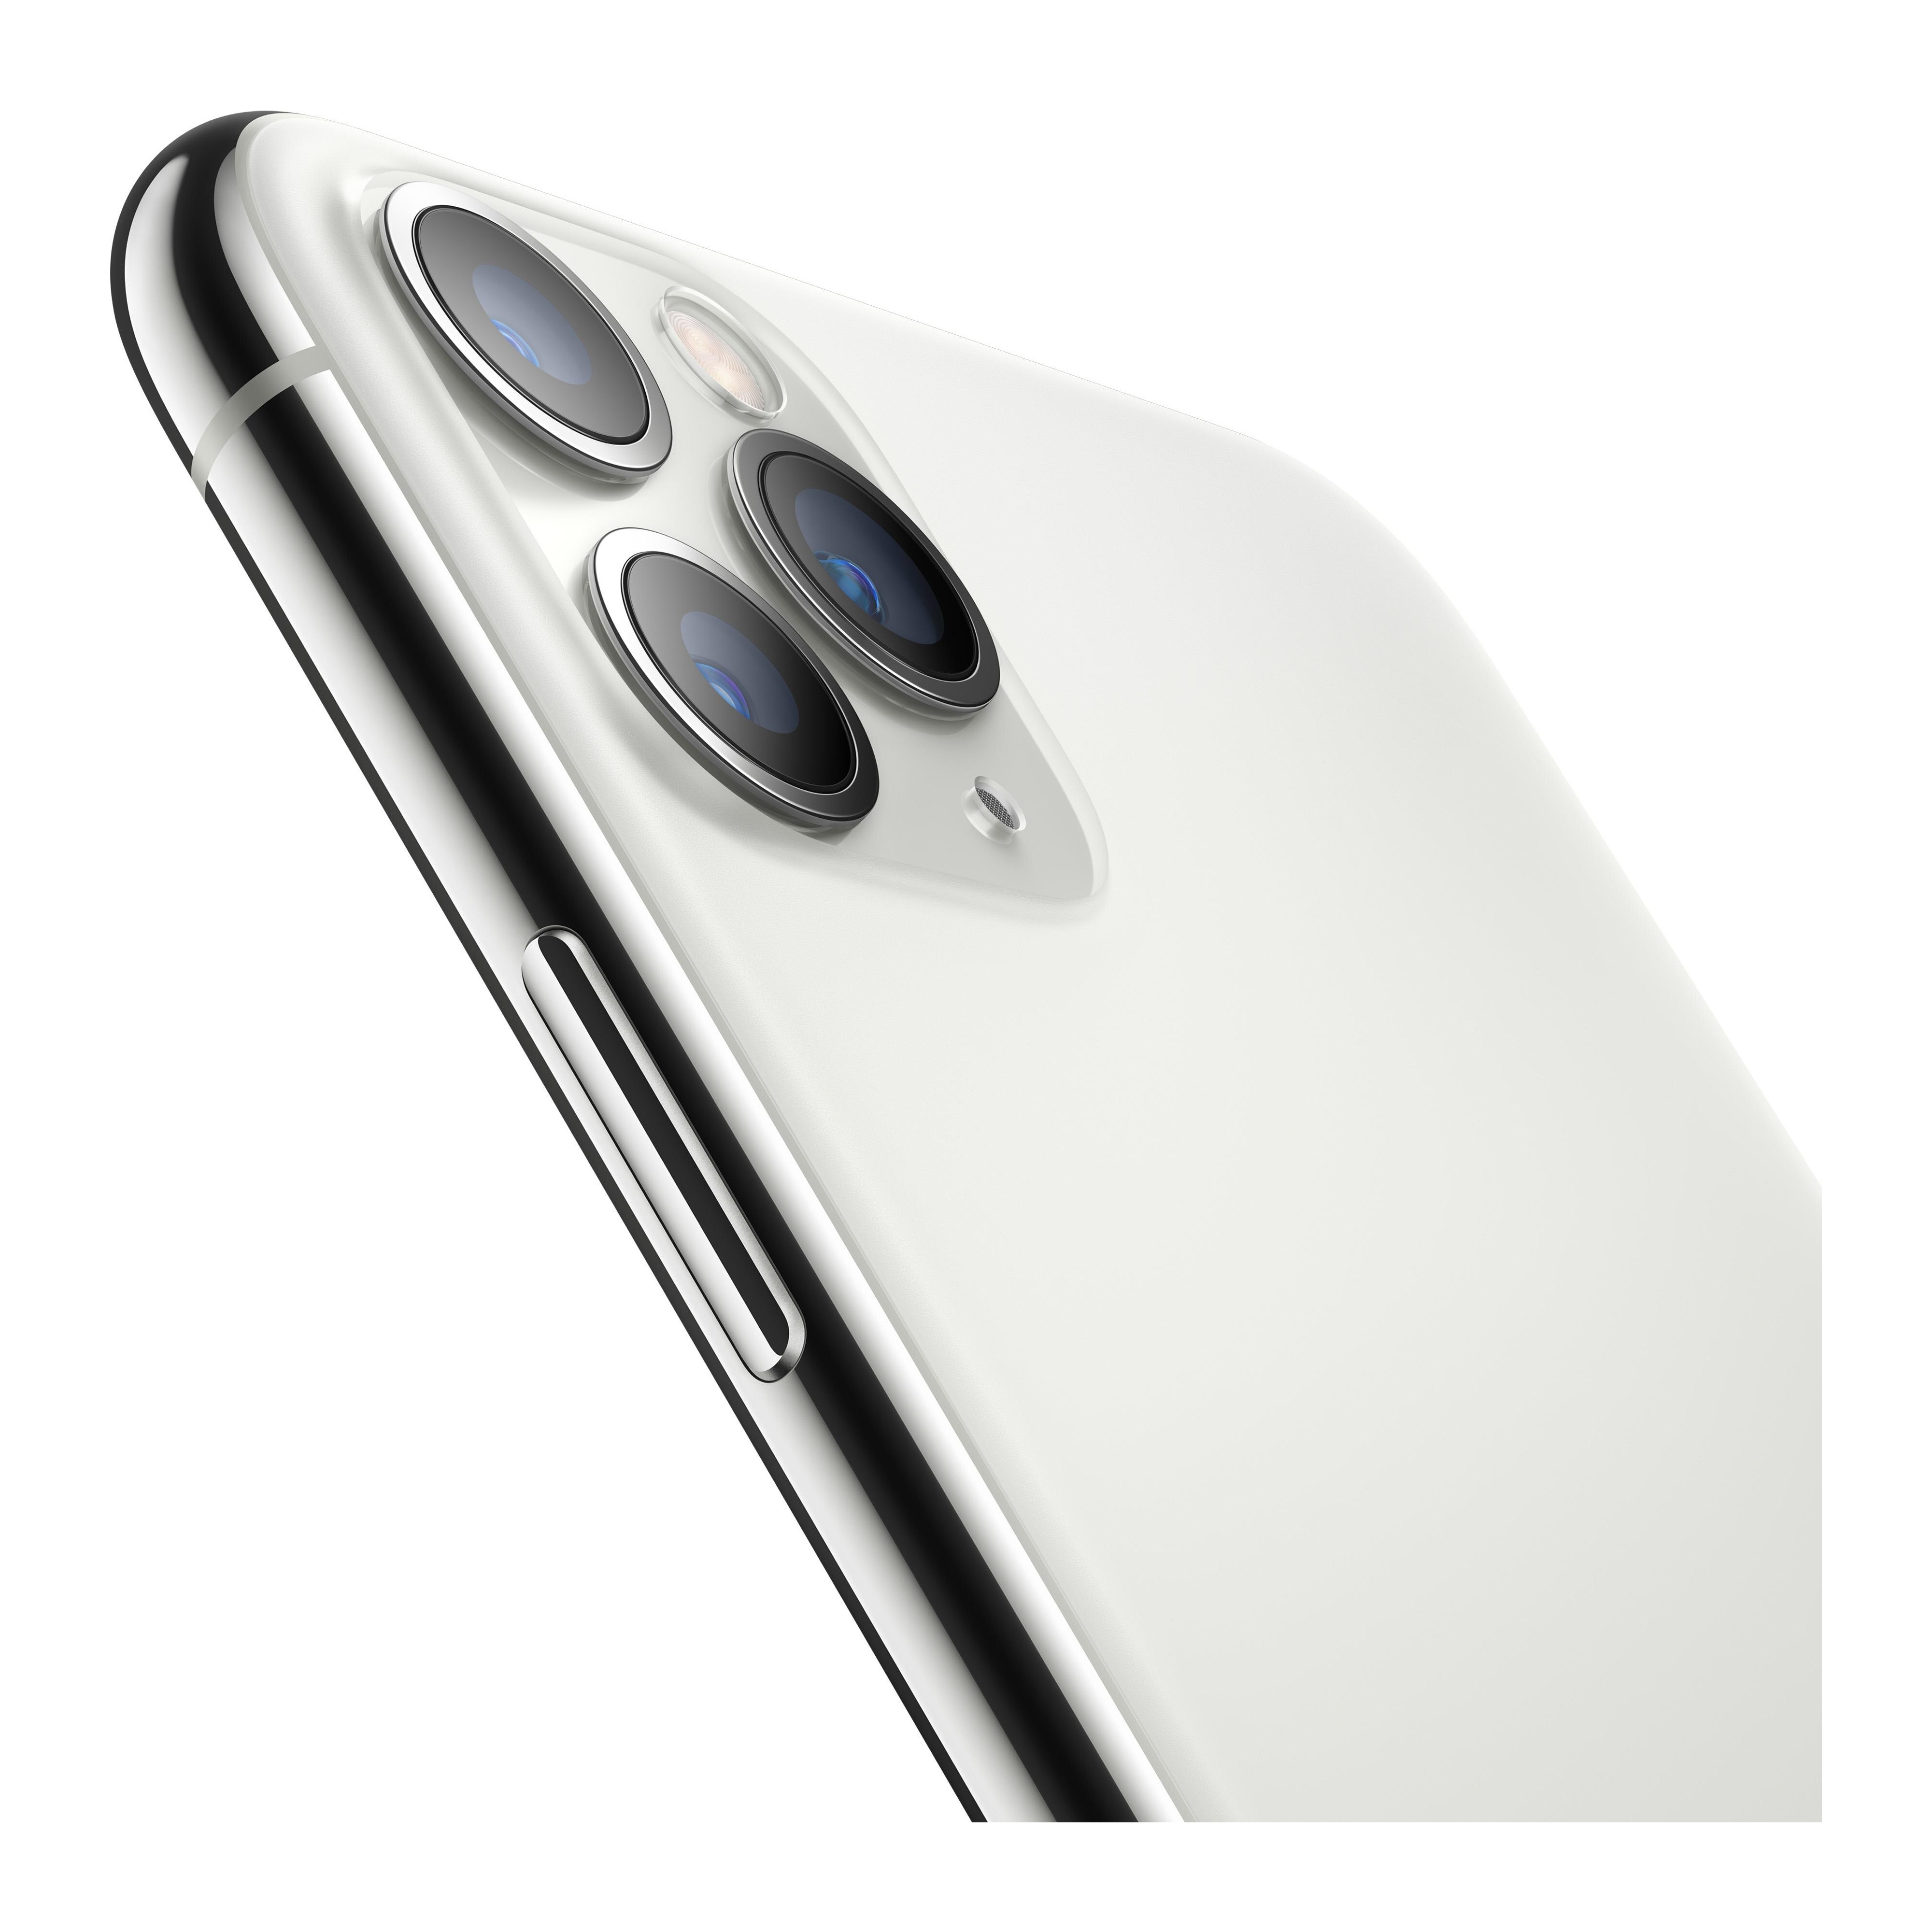 Bild von iPhone 11 Pro Max 64 GB silber